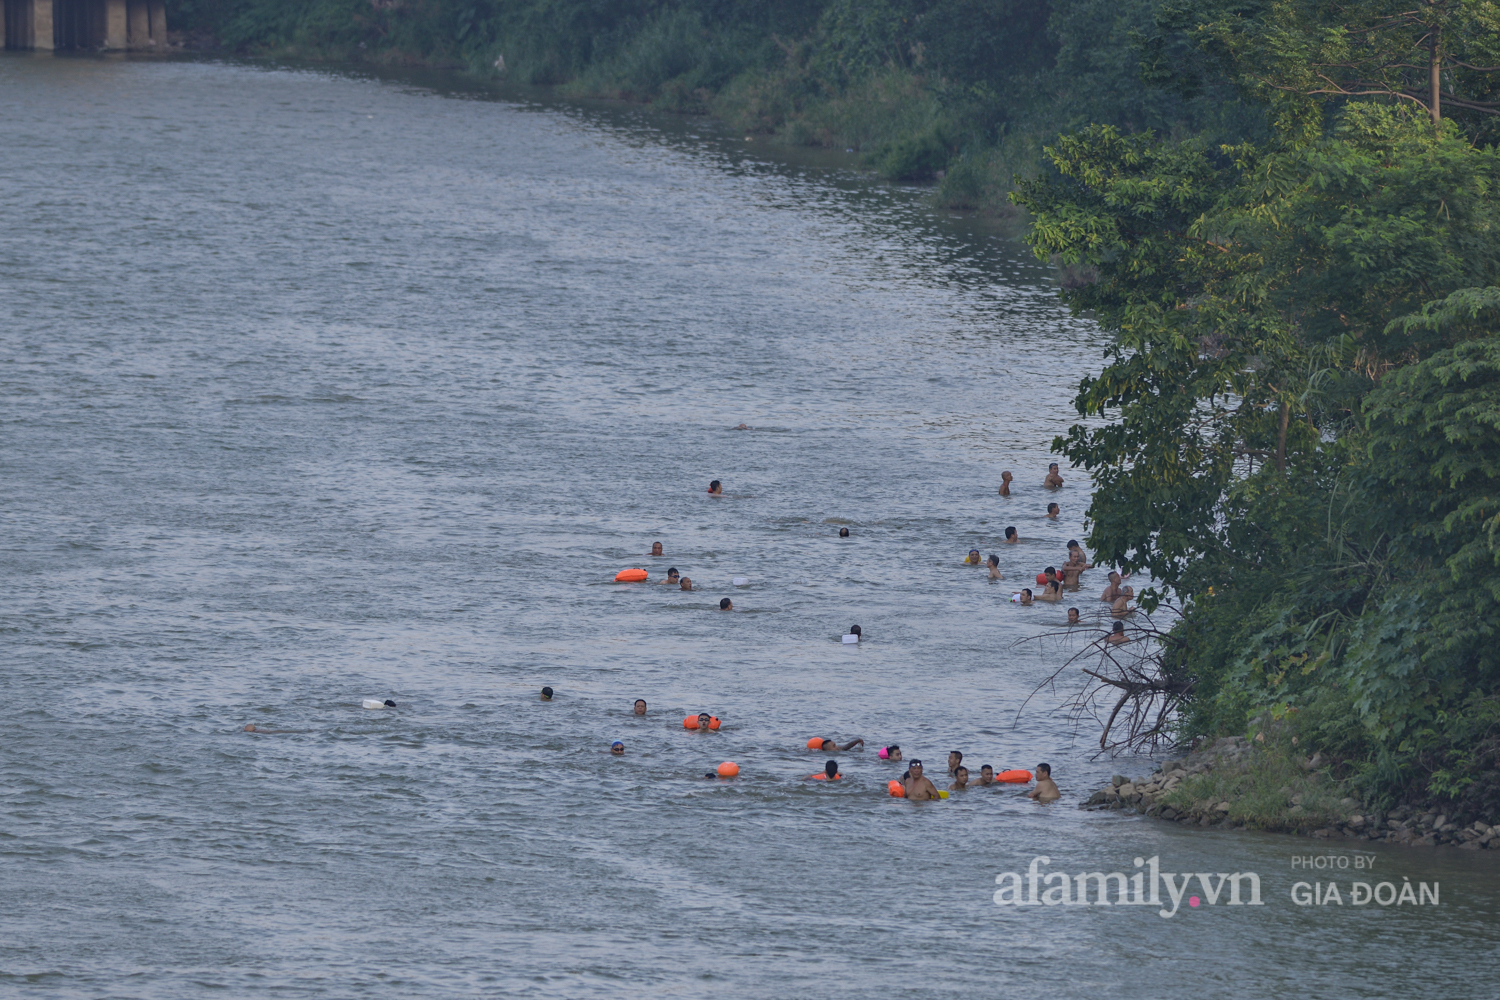 Bất chấp lệnh cấm tụ tập đông người, người Hà Nội vẫn đổ xô ra sông Hồng giải nhiệt - Ảnh 14.